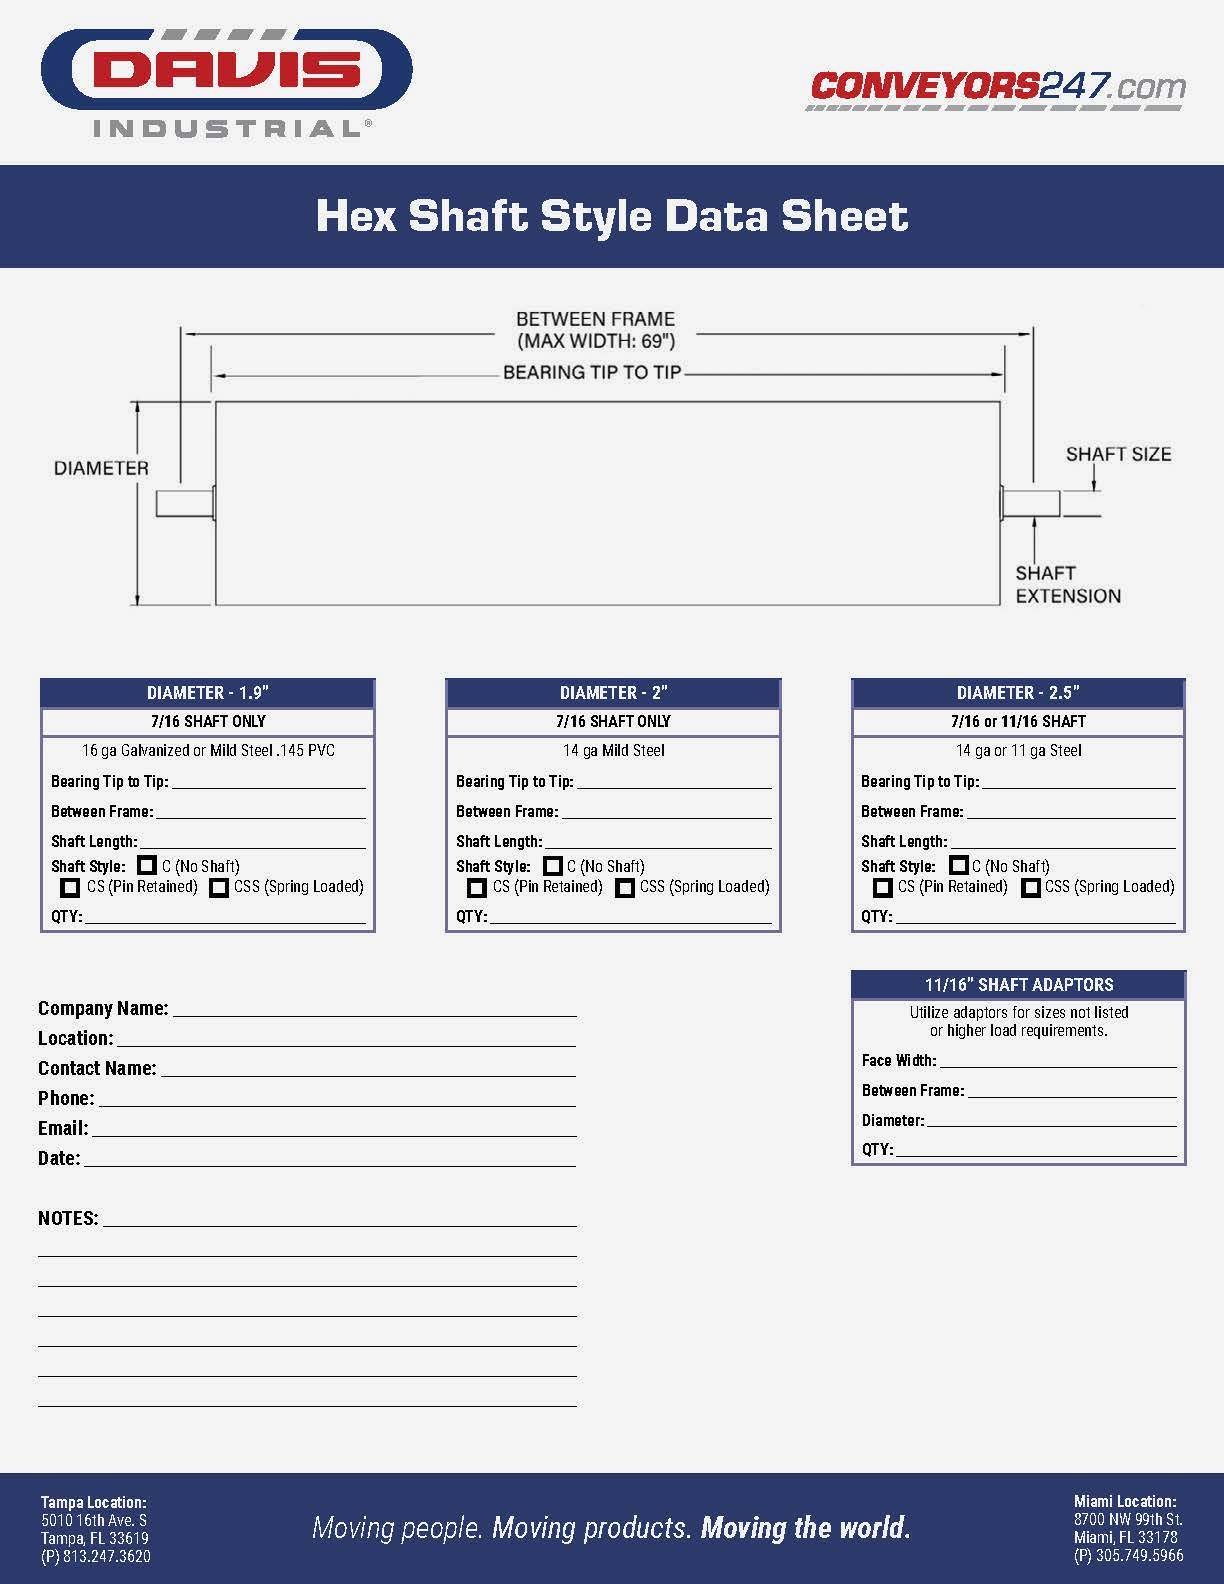 Davis_Hex Roll Data Sheet